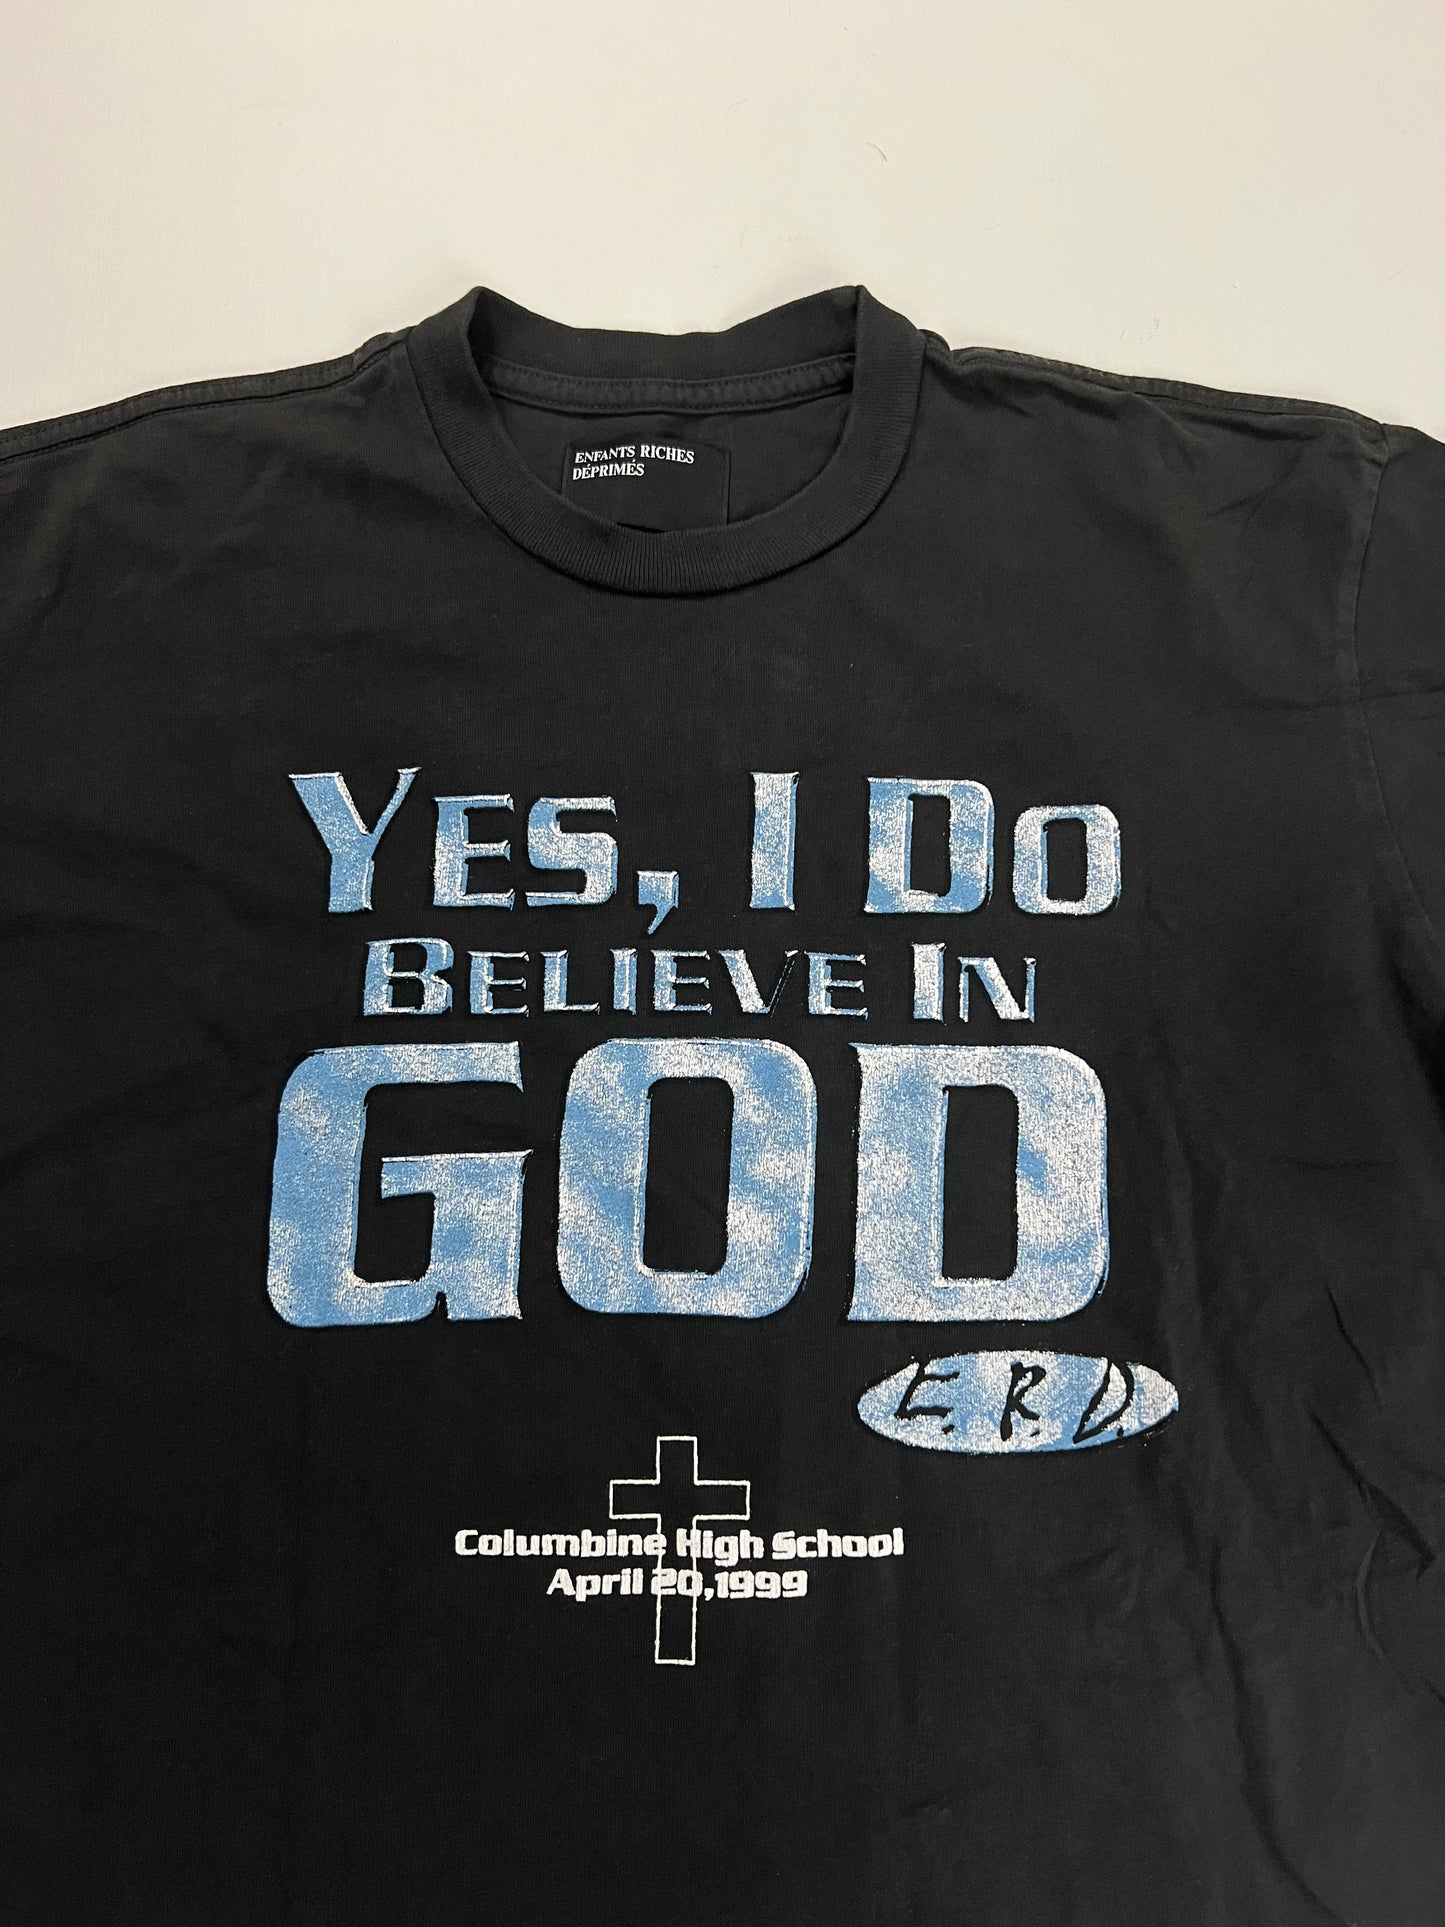 Enfants Riches Deprimes I Do Believe In God Columbine T-Shirt SZ:M